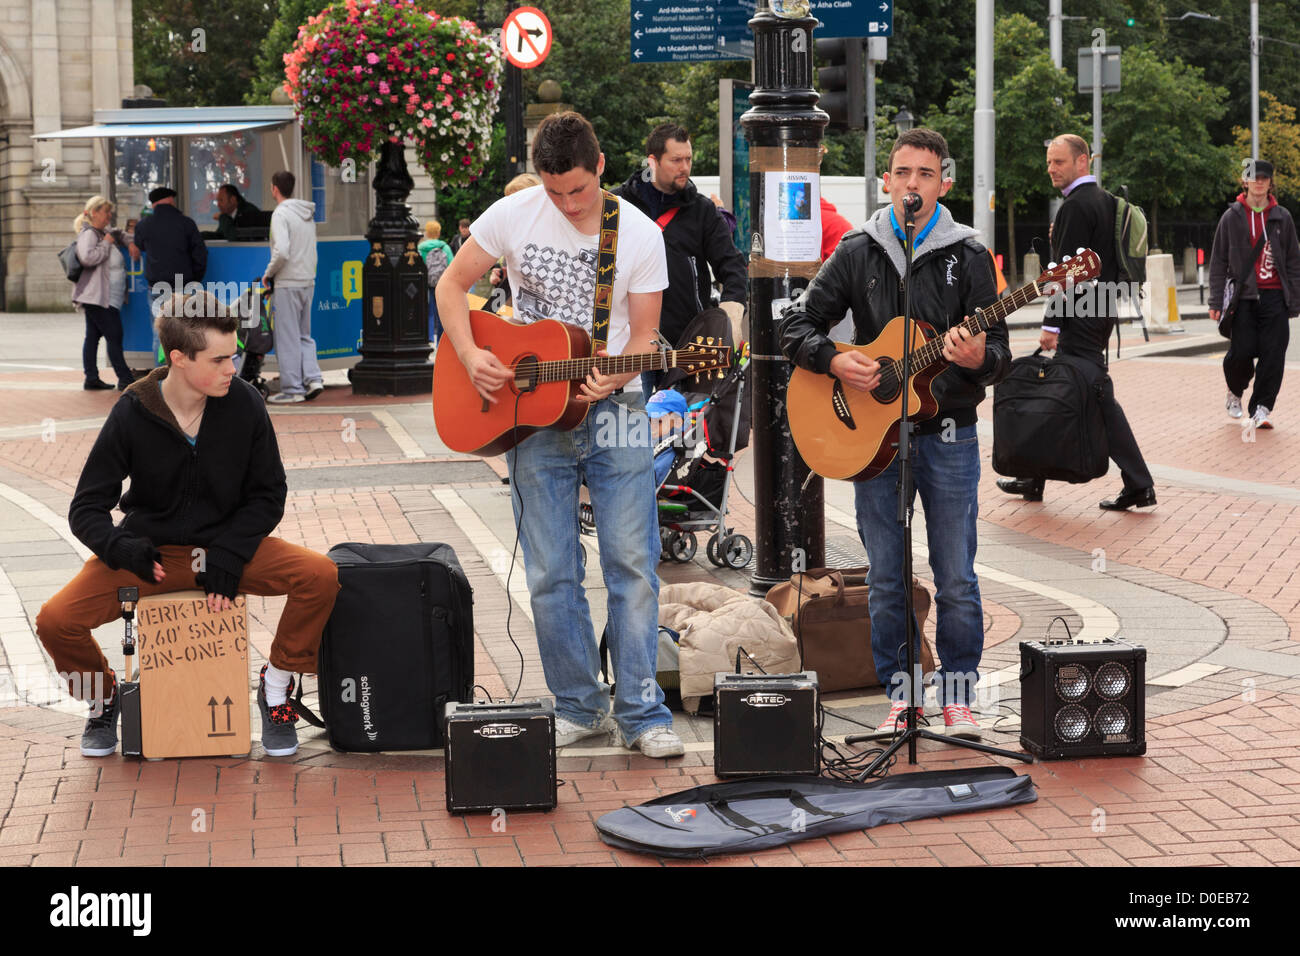 Typische Straßenszene mit drei irischen Musikern Gitarre Straßenmusik im Stadtzentrum auf der Grafton Street Dublin Irland Irland Stockfoto